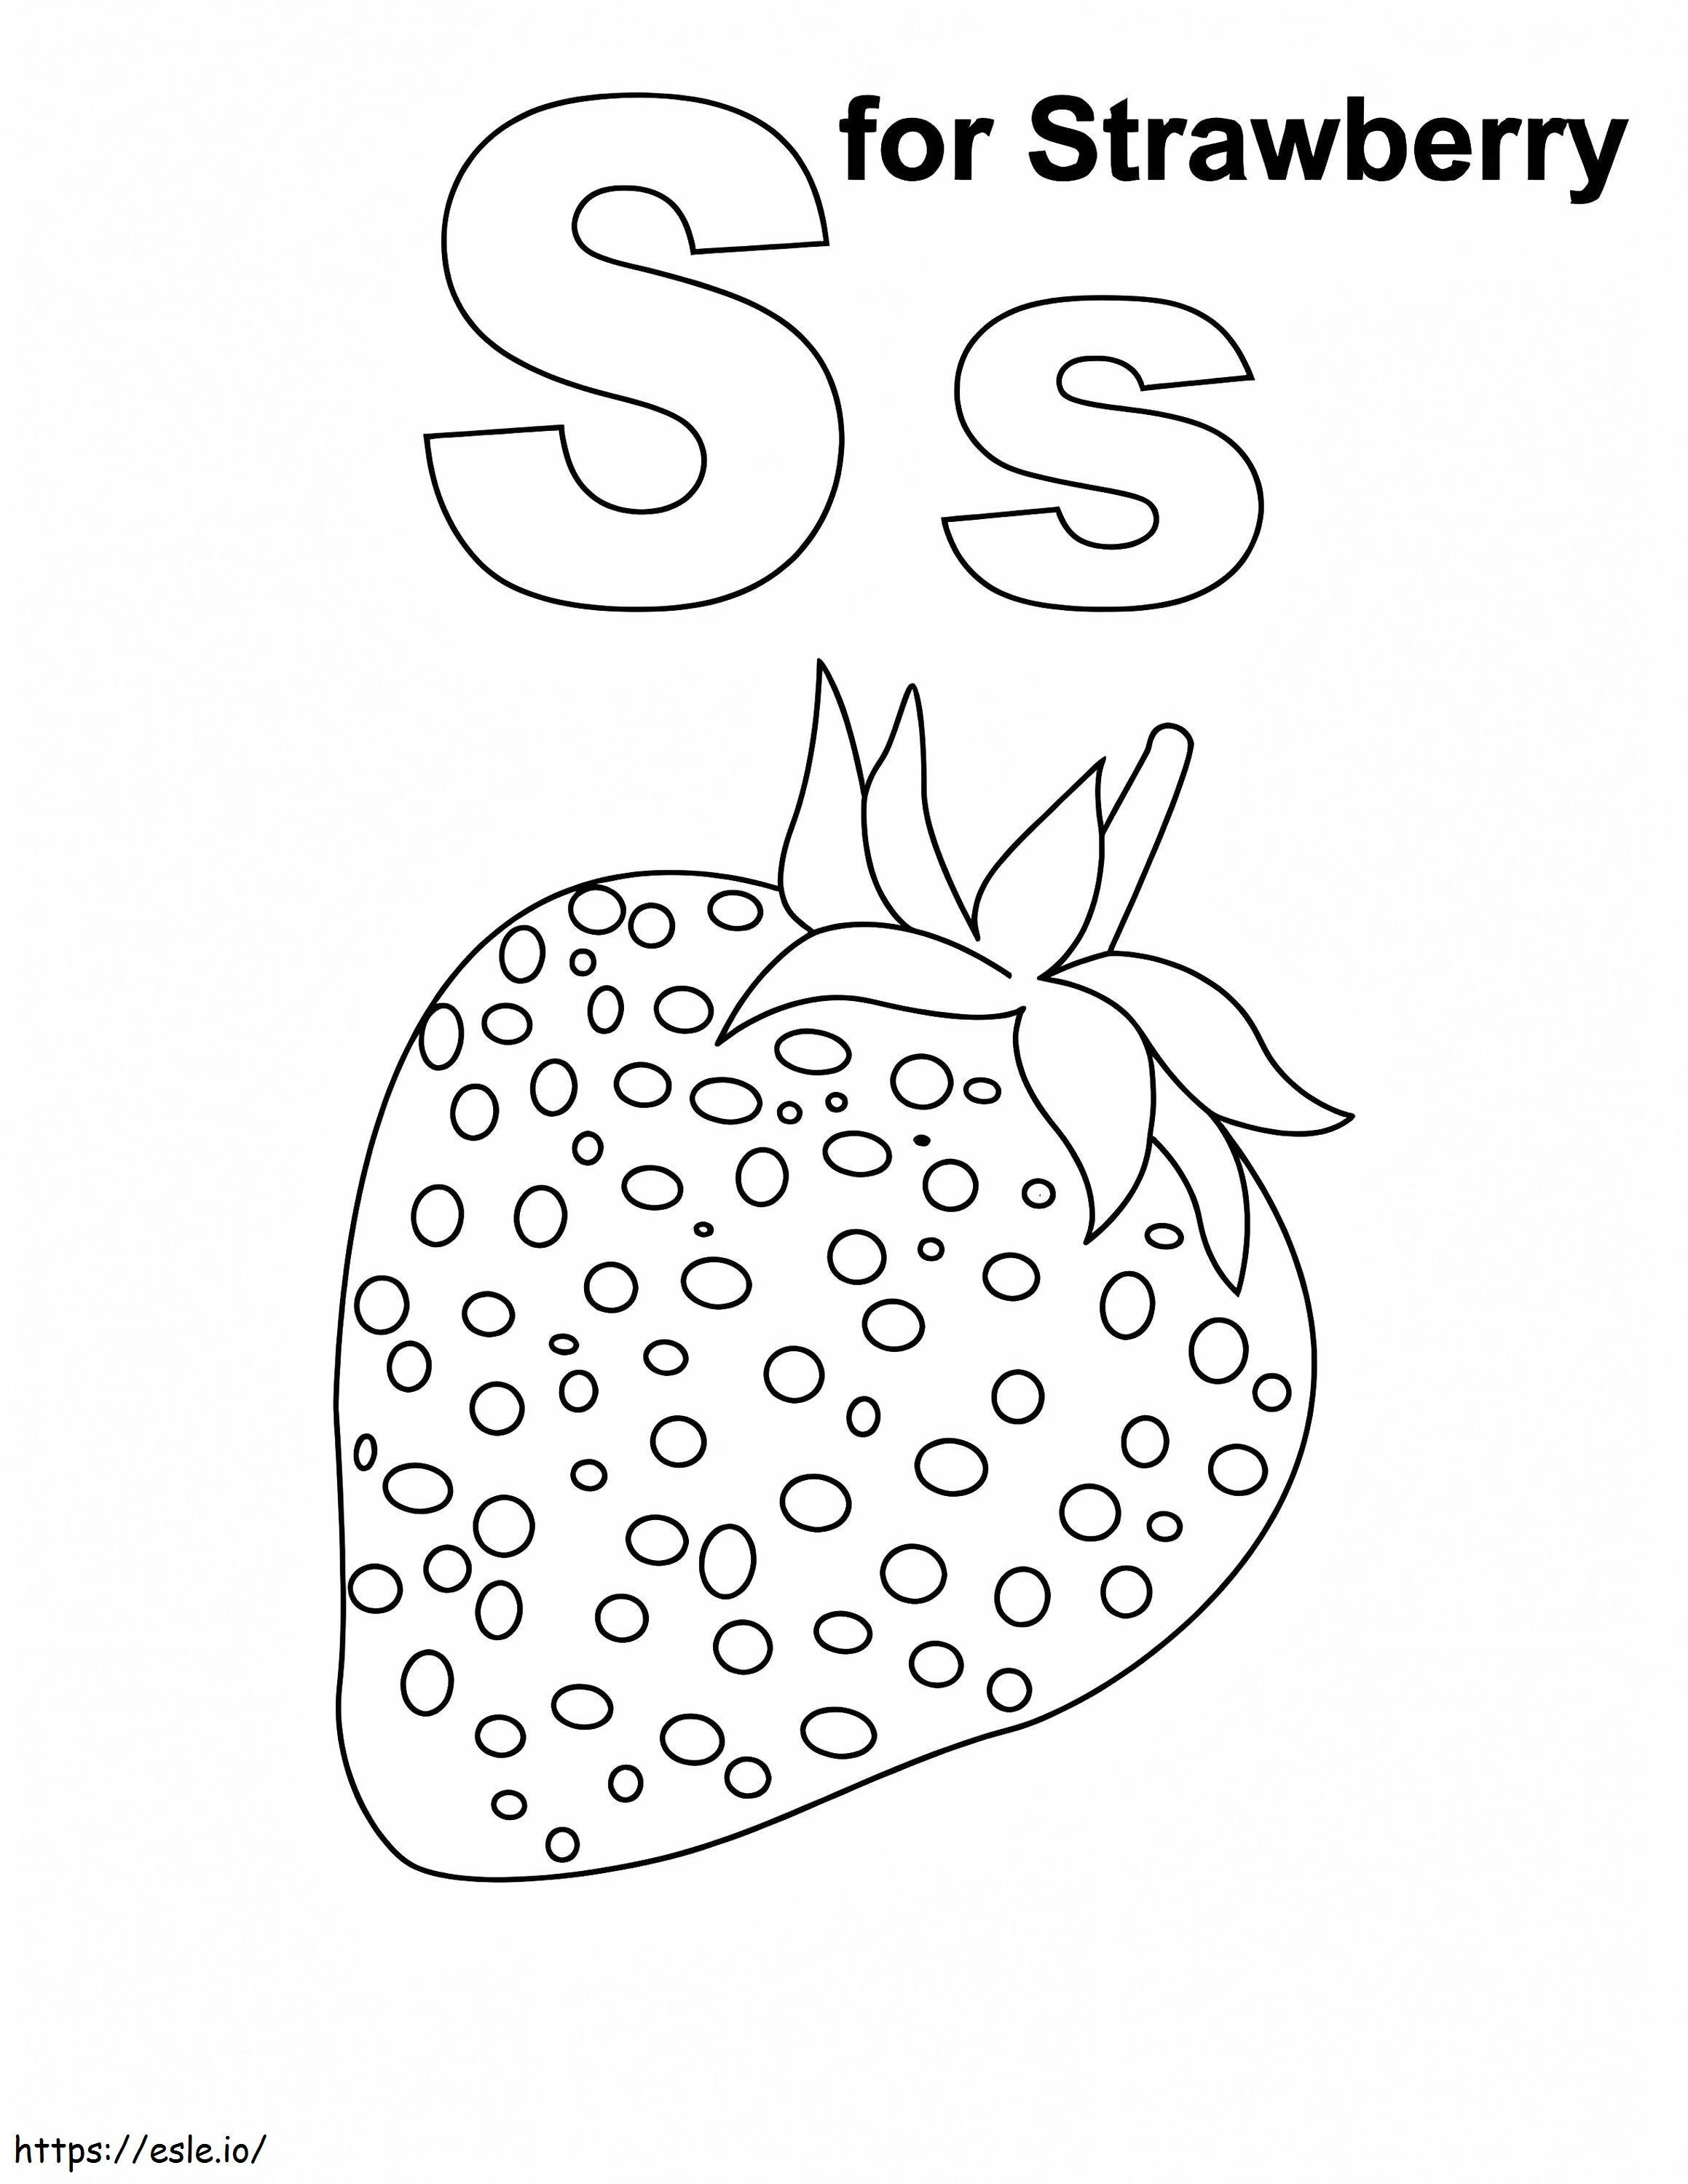 Litera S pentru căpșuni de colorat